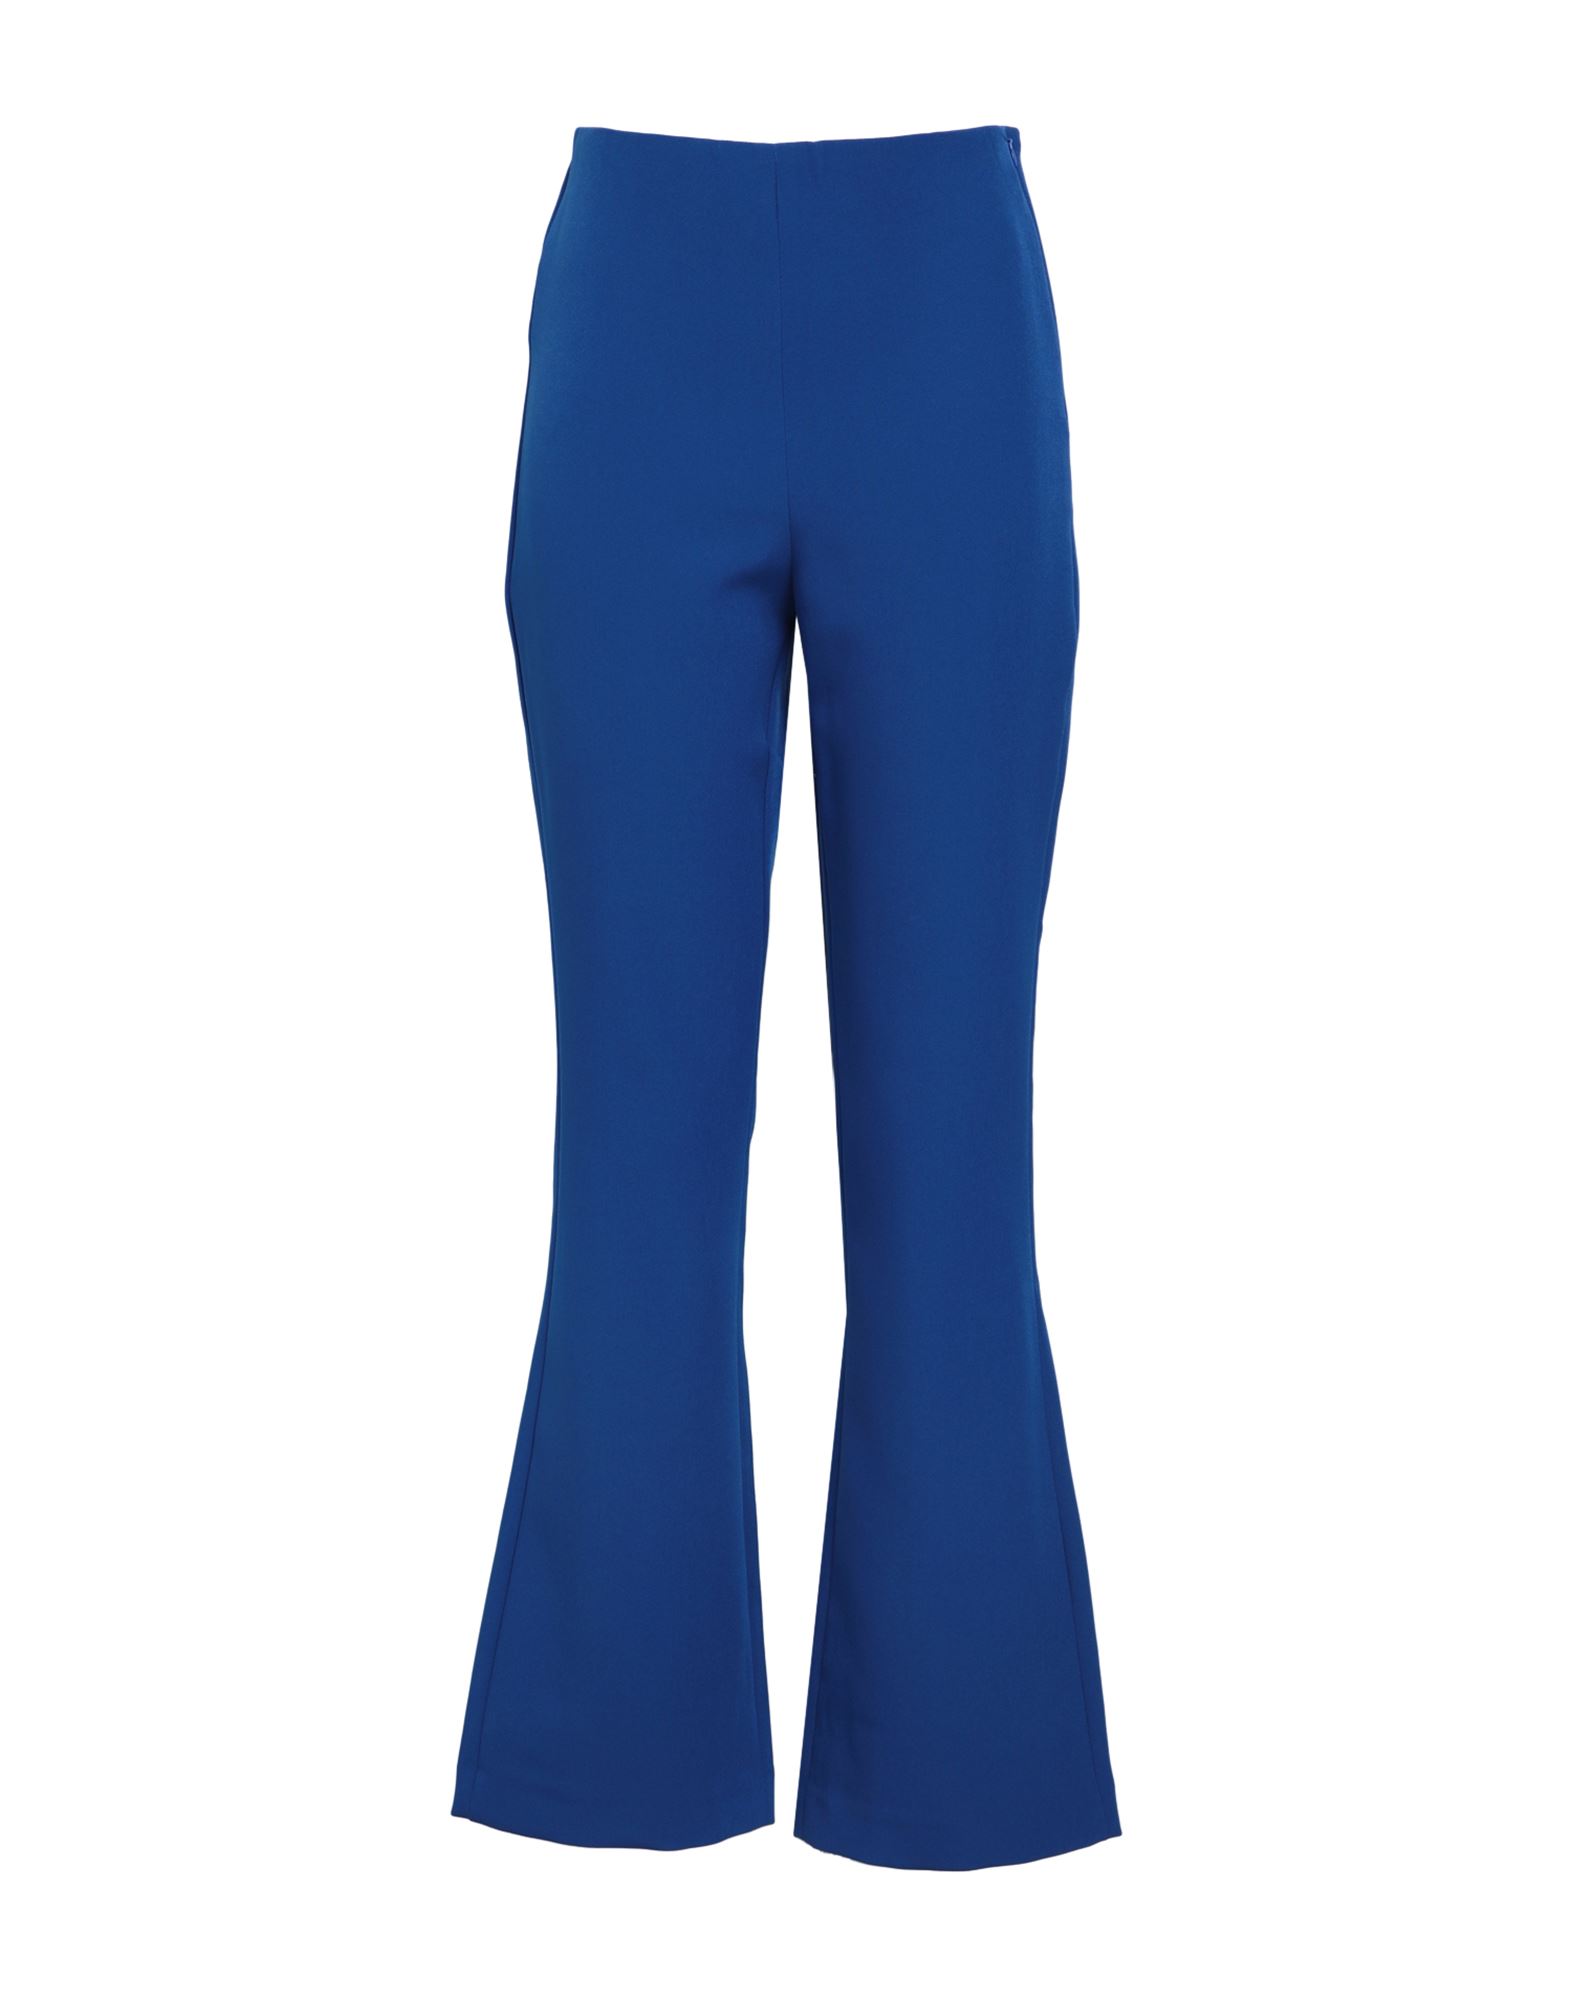 Jjxx By Jack & Jones Woman Pants Bright Blue Size Xs Polyester, Elastane